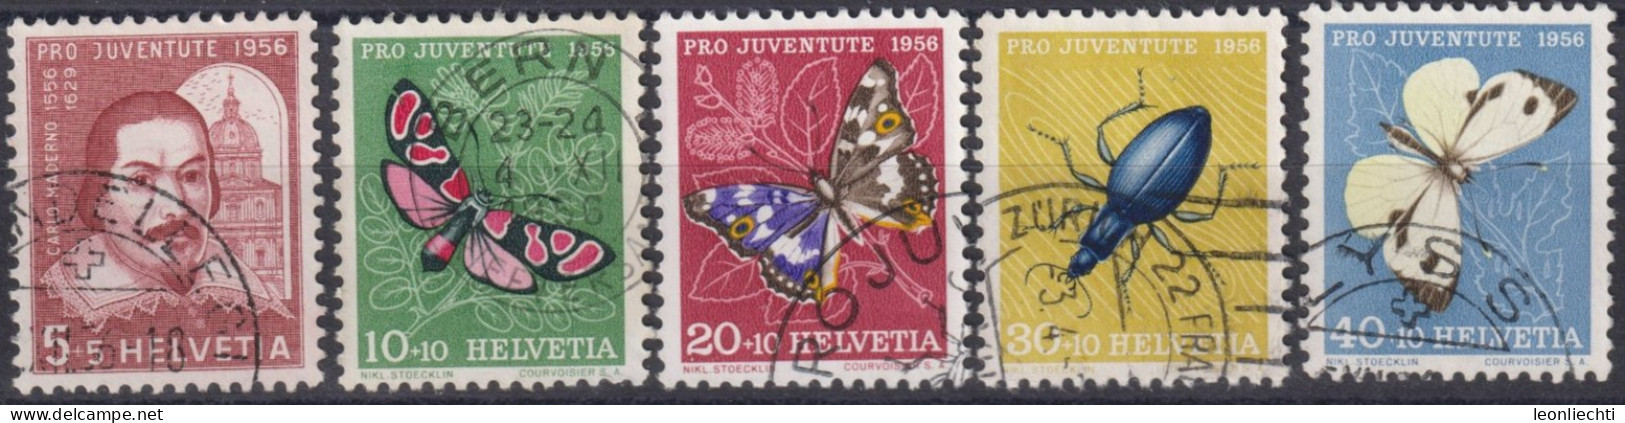 1956 Schweiz Pro Juventute ° Zum:CH J163-J167,Yt:CH 581-785, Mi:CH 632-636, Carlo Maderno Und Insekten - Usati